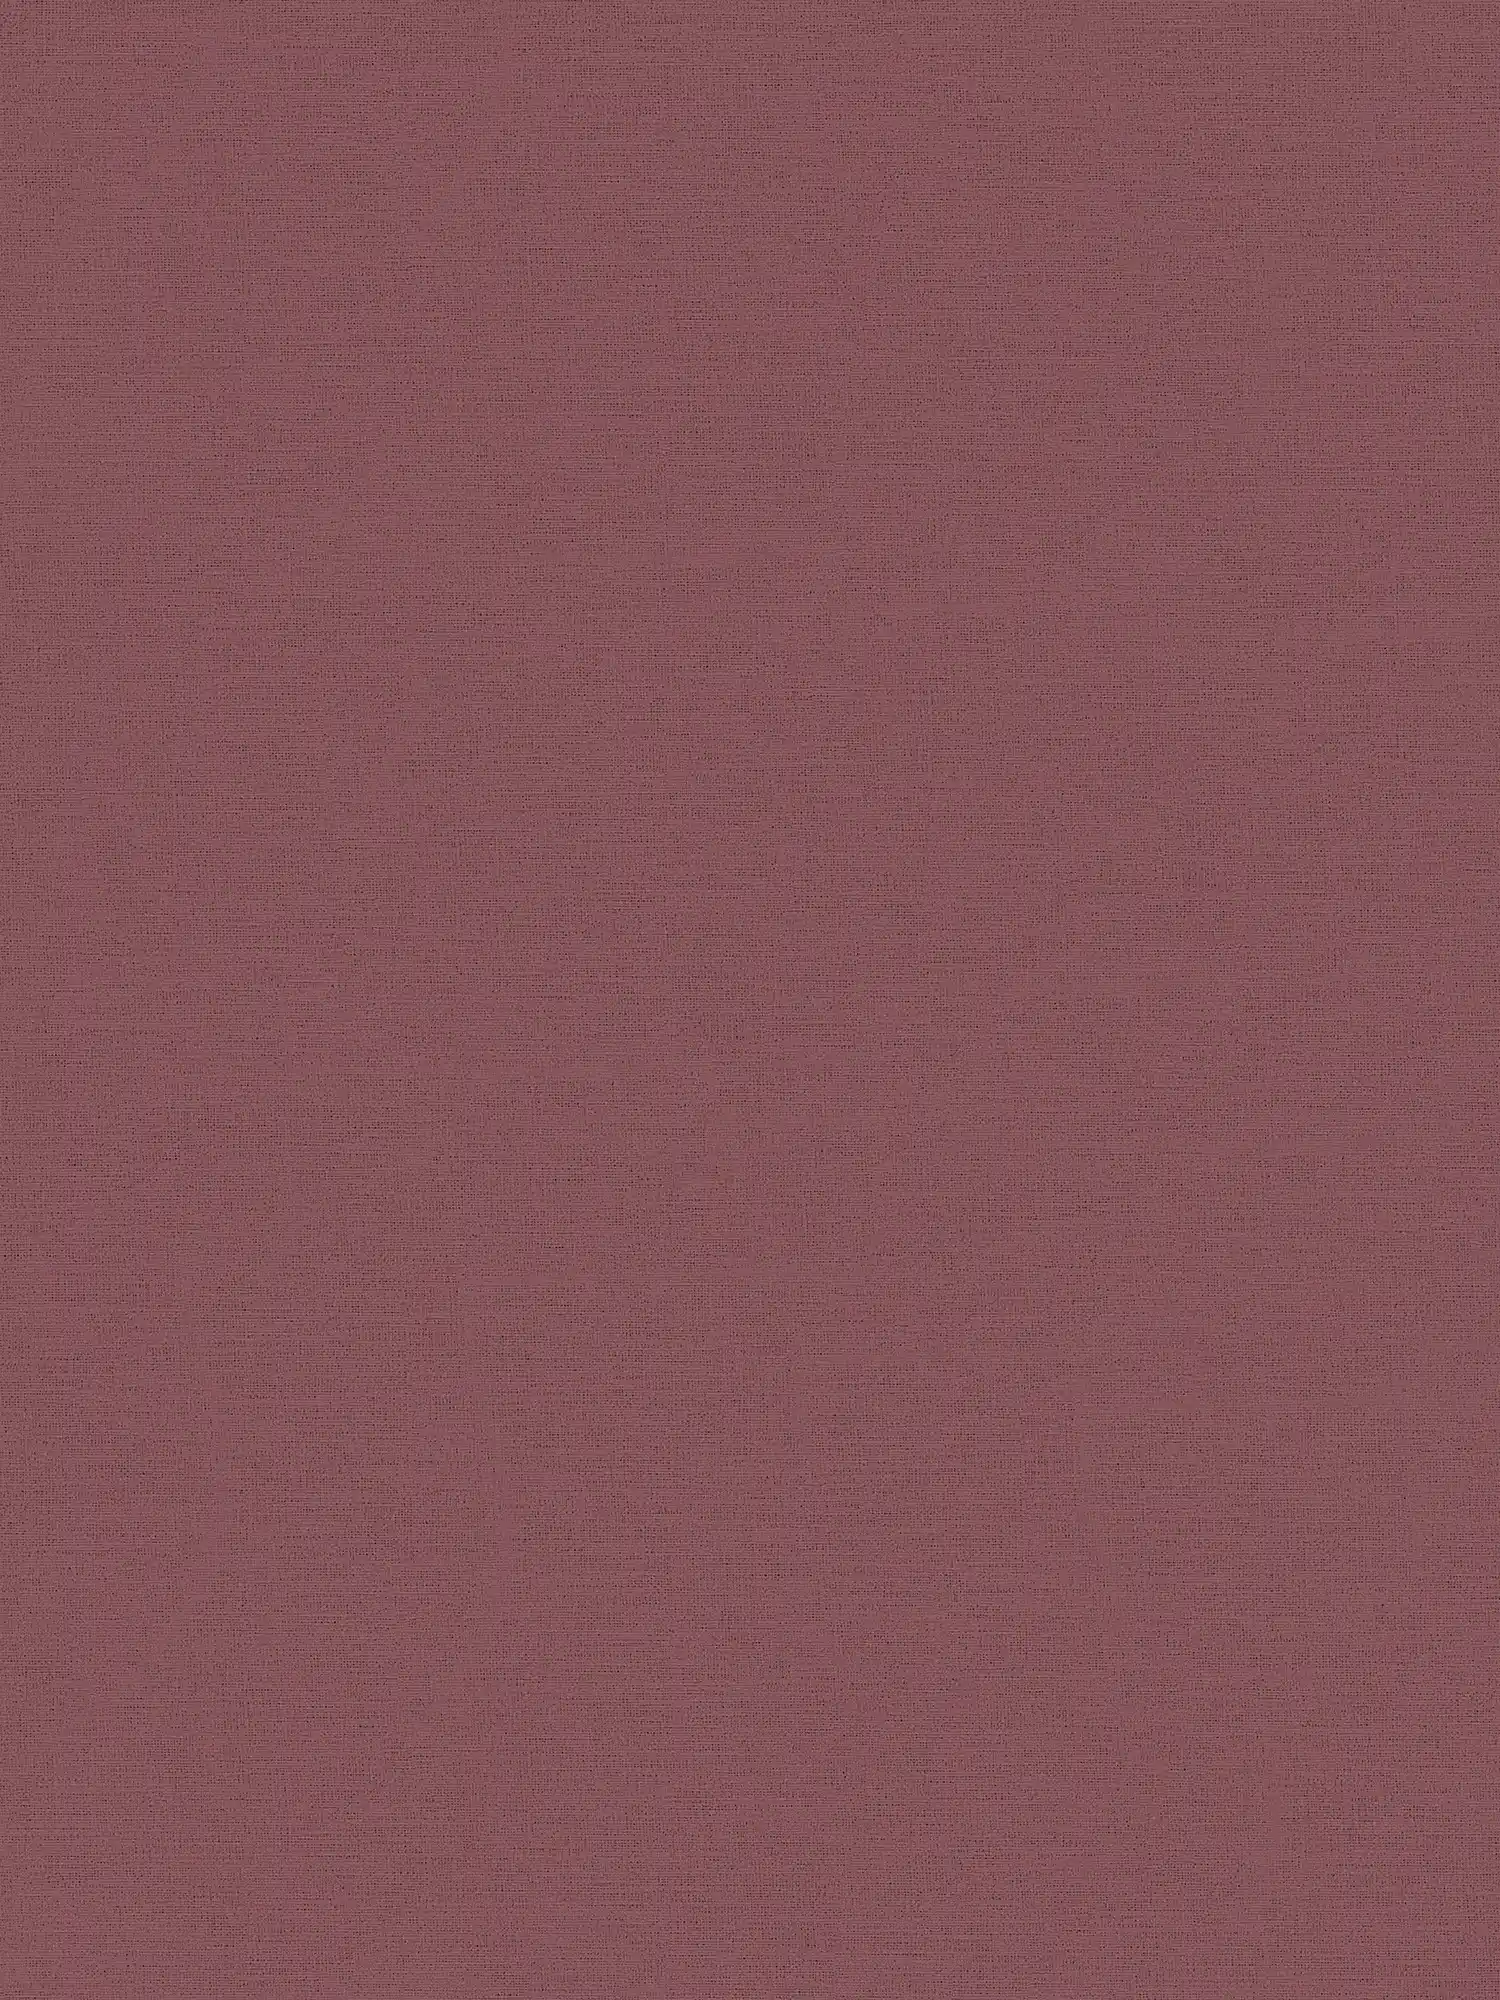 Papier peint uni Bordeaux rouge avec aspect textile
